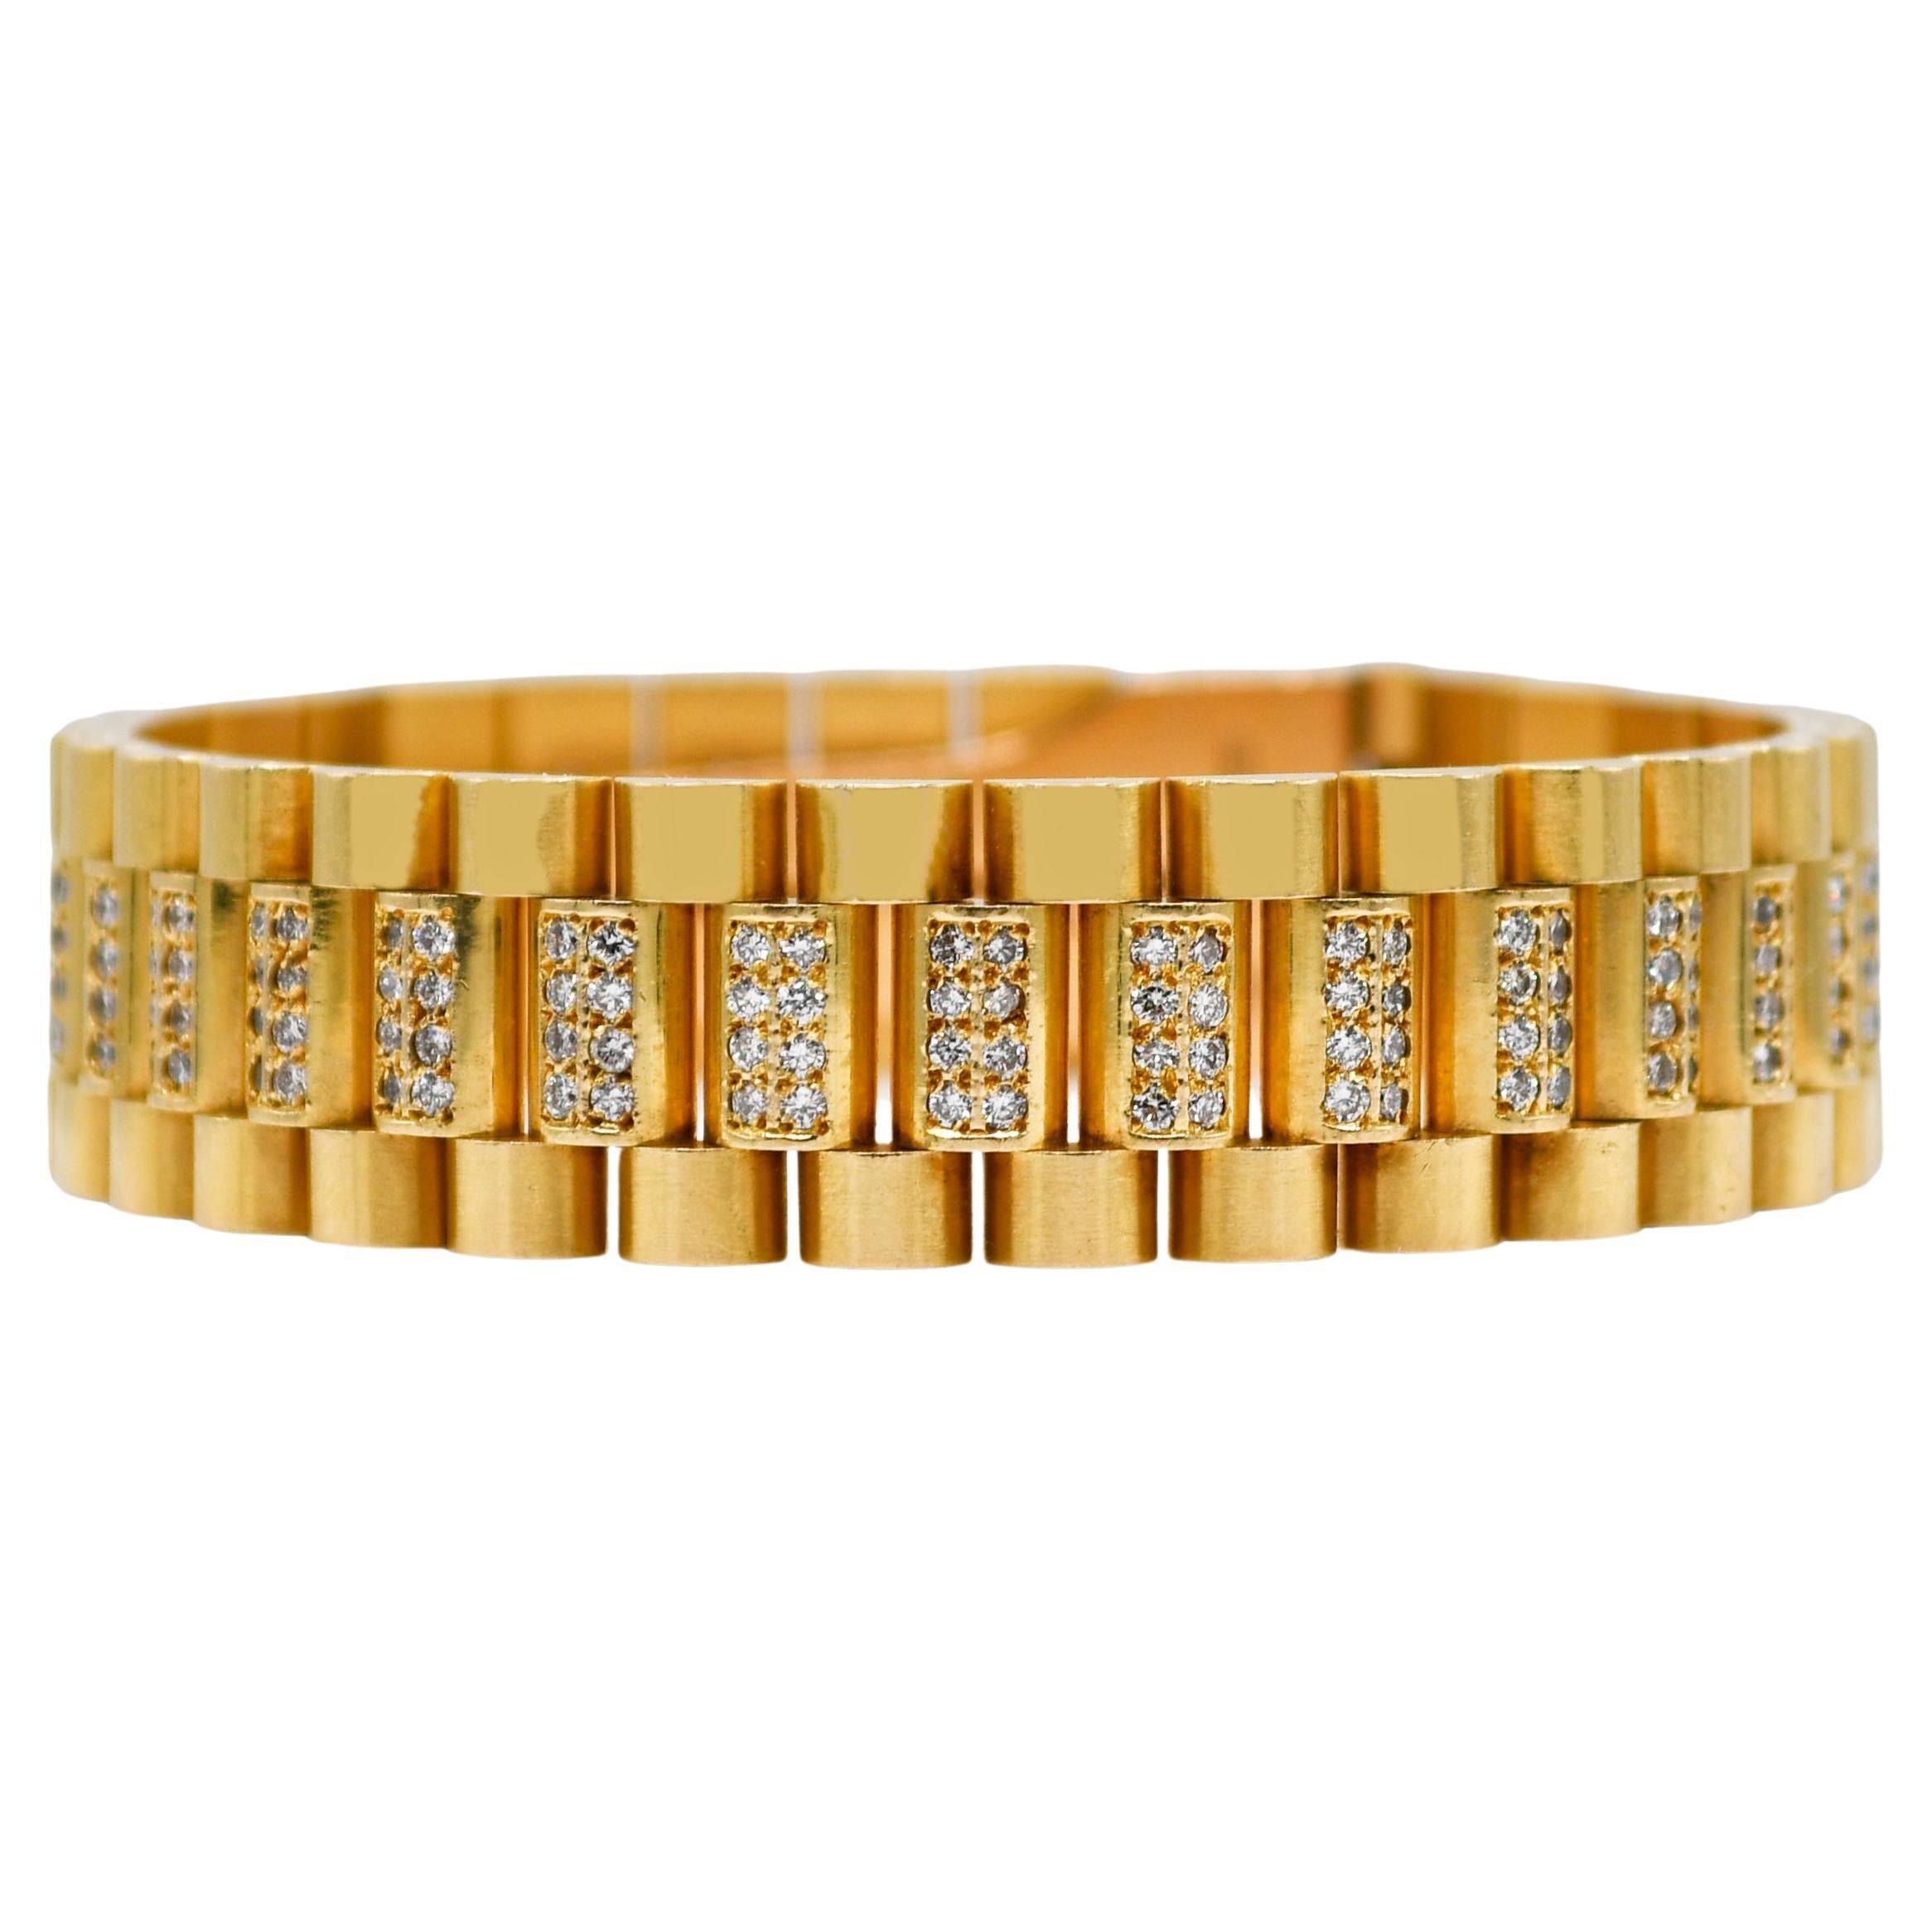 18K Yellow Gold Rolex Style Diamond Jubilee Bracelet